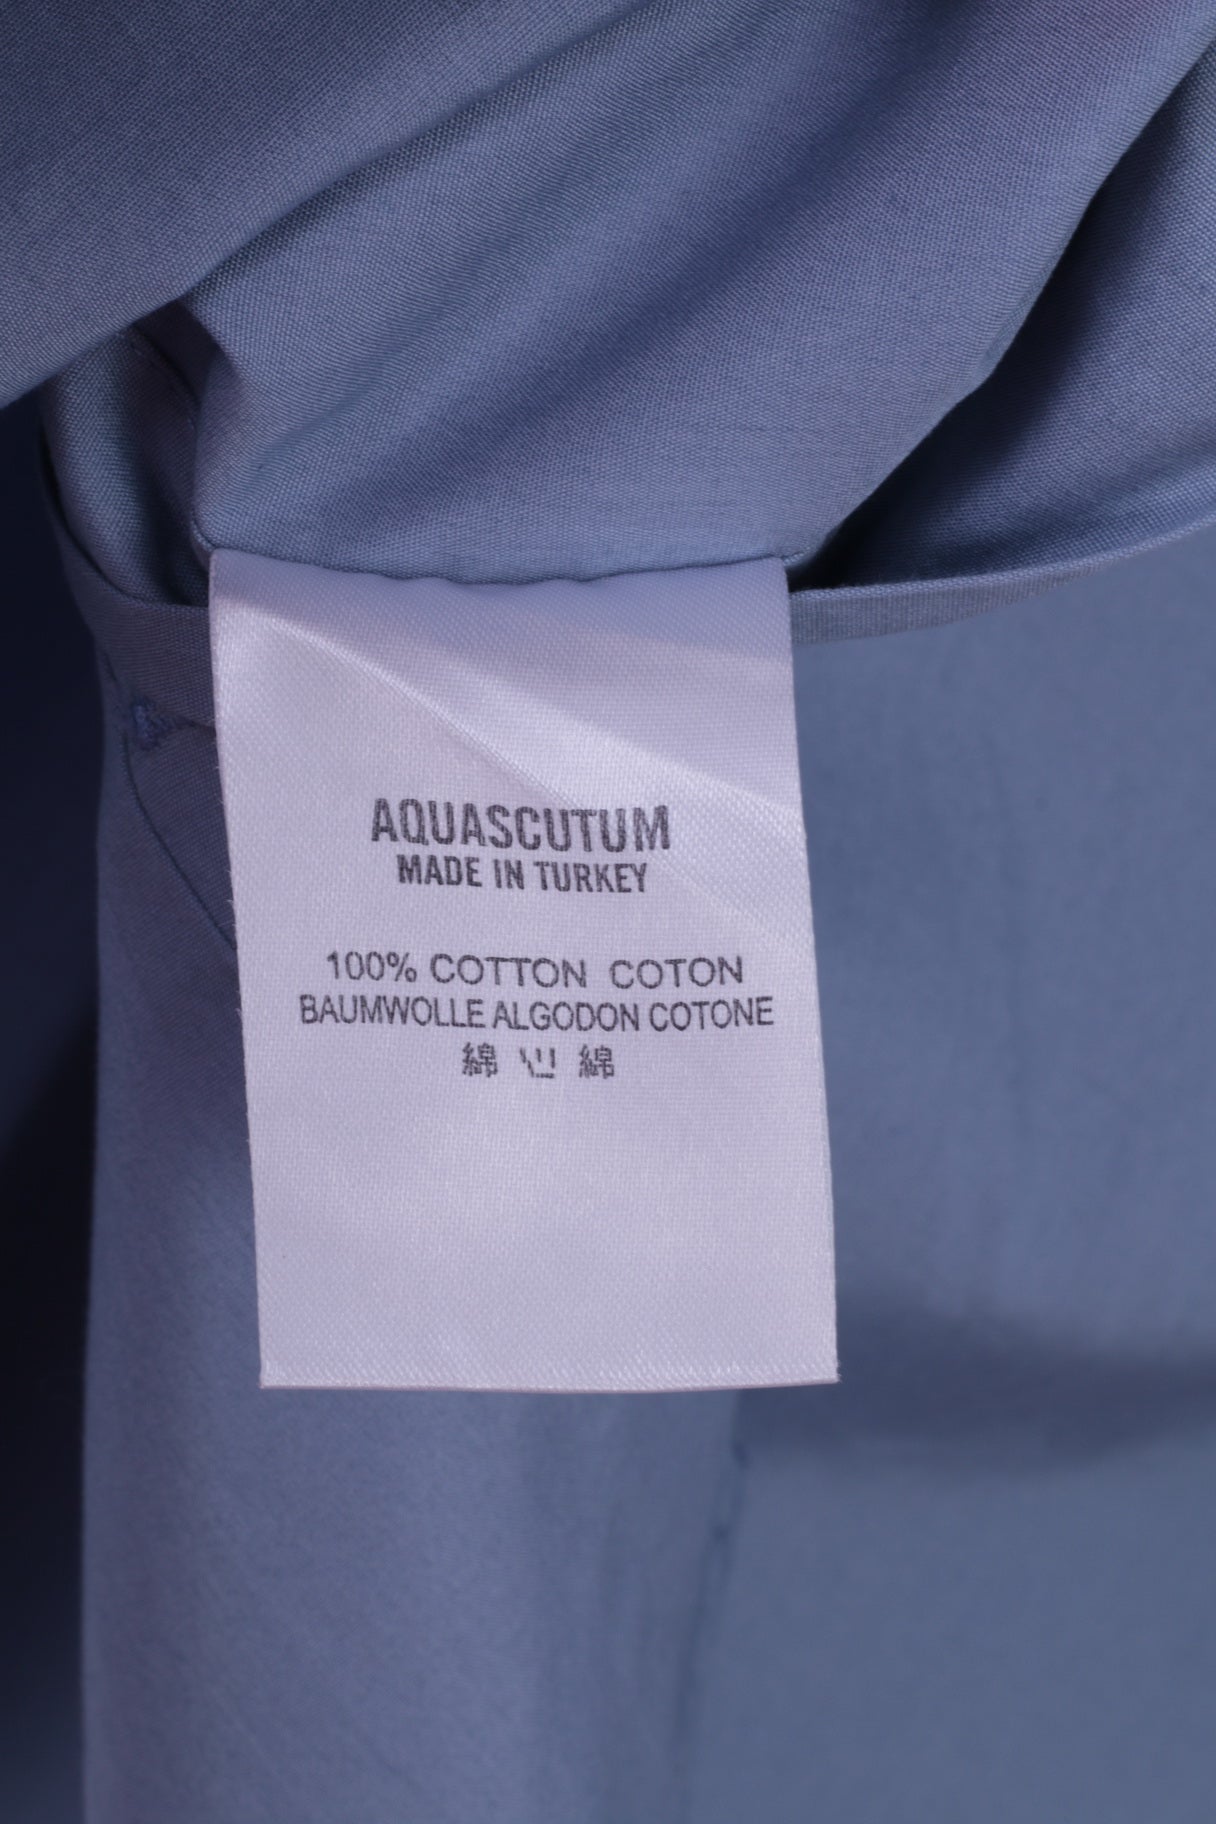 Aquascutum Hommes 16 S Chemise décontractée Bleu Slim Fit Coton Manches Longues Haut Uni